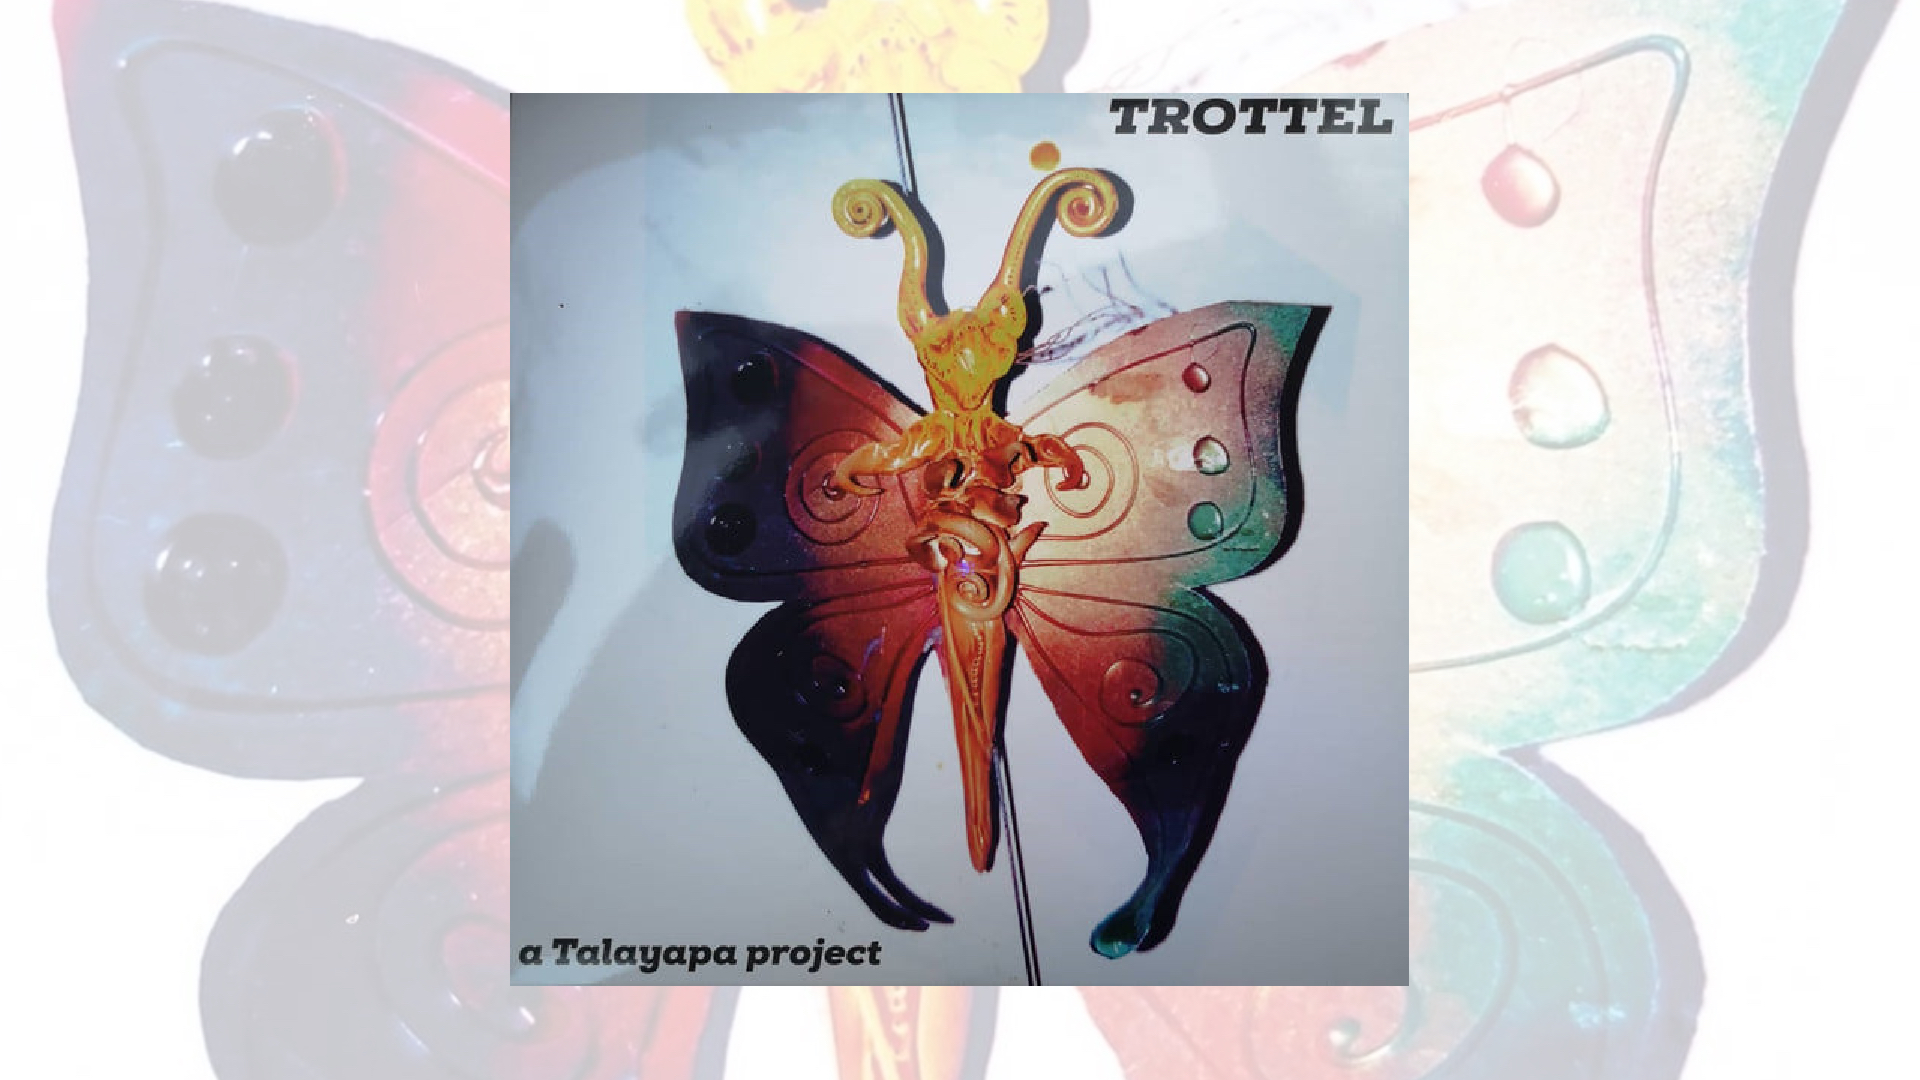 Részletesen elmesélt történetek a Trottel új lemezén – Vinyl kritika